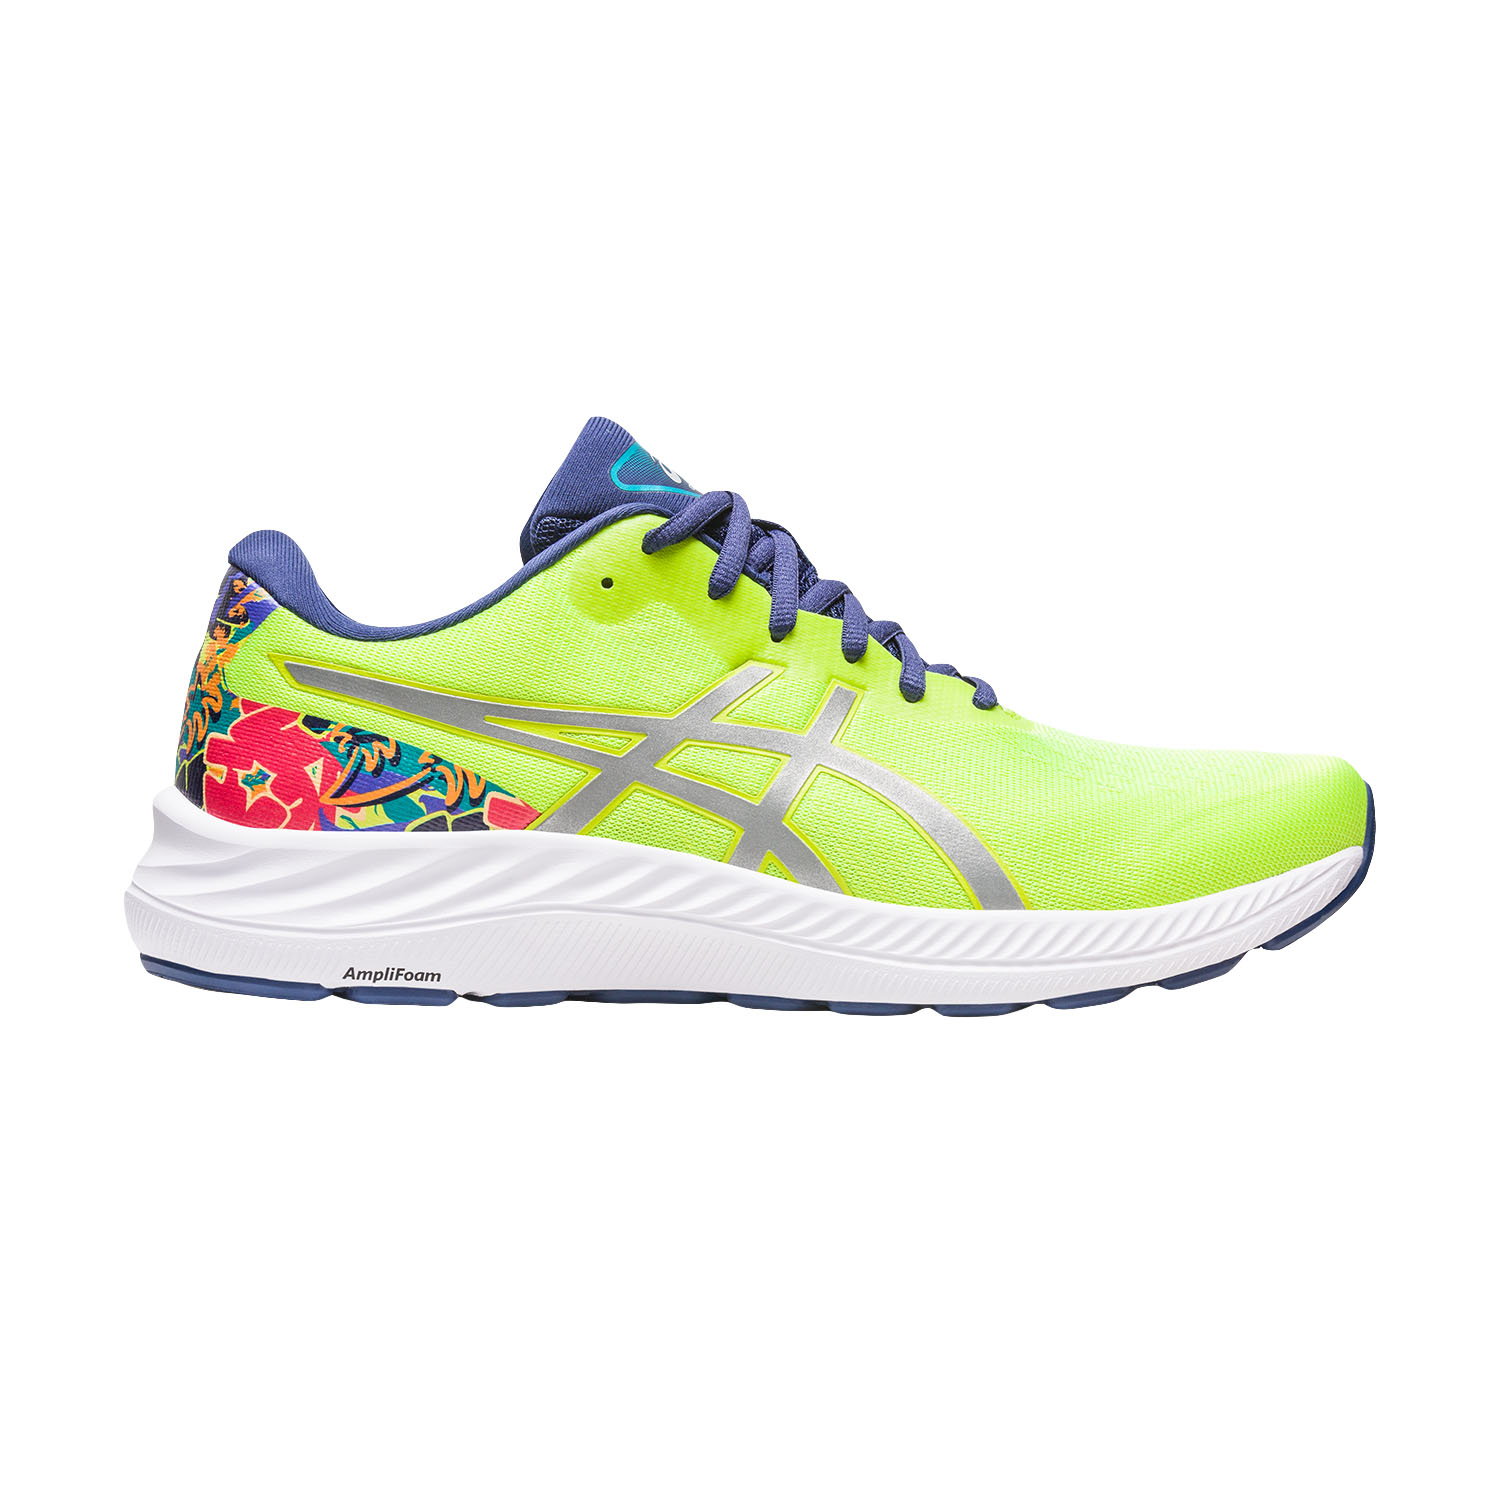 Asics Gel 9 Men's Running Shoes - Lime Zest/Lite